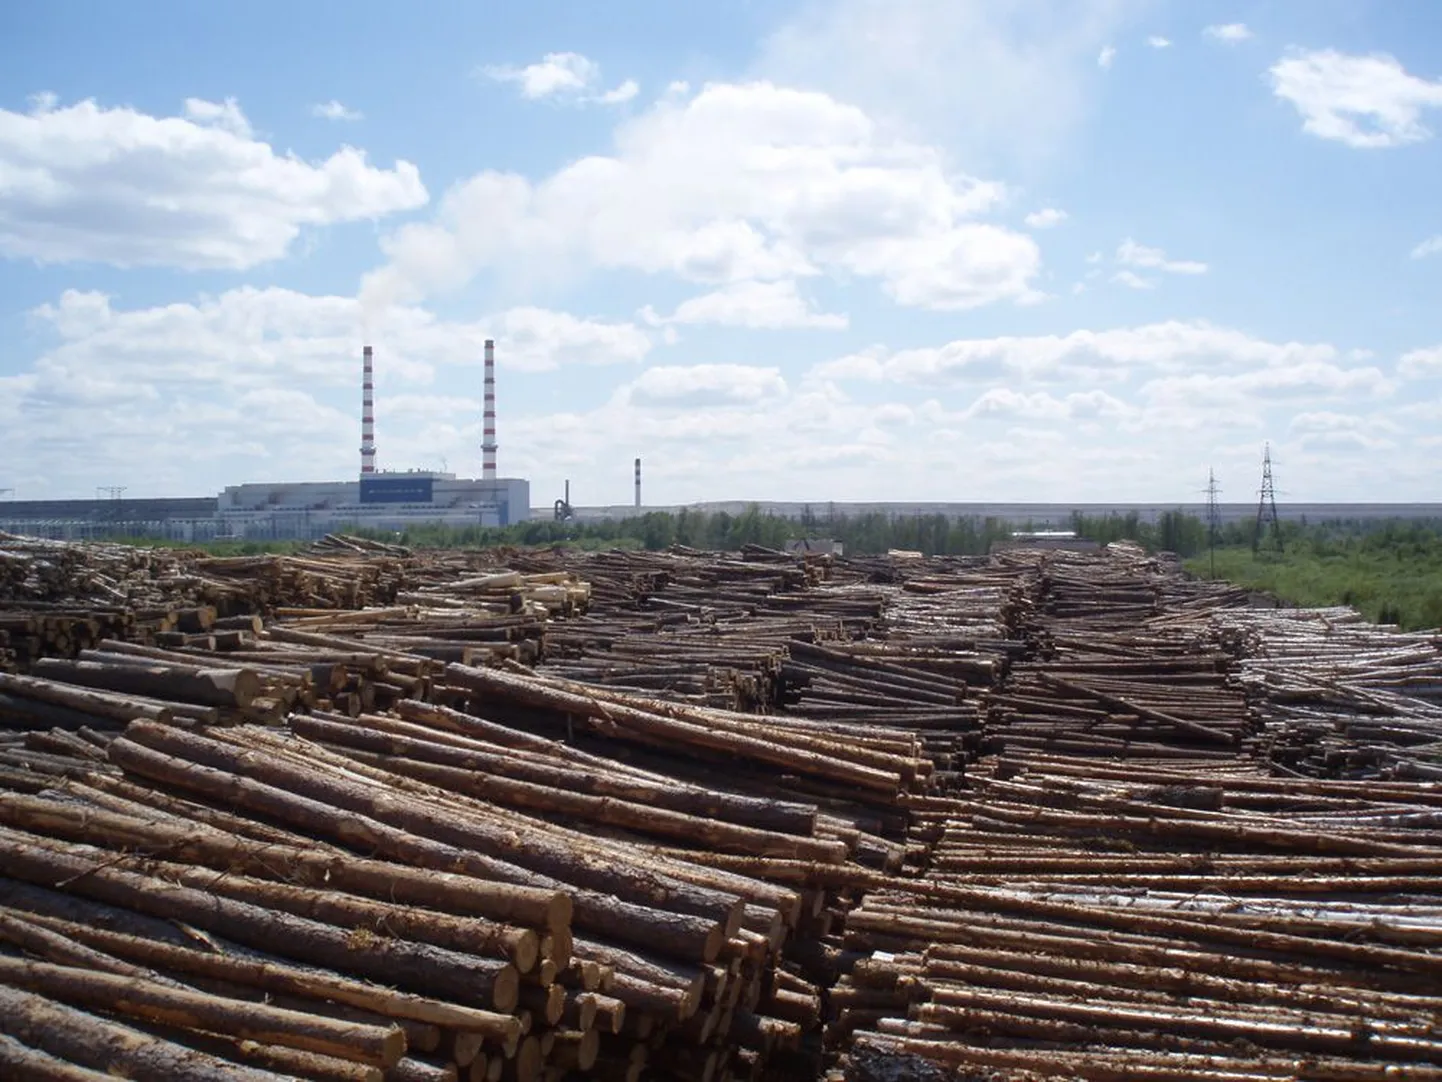 Сосновые дрова на складской площадке Eesti Energia составляют лишь треть того количества дров, которое уходит в топки Нарвских электростанций за год.